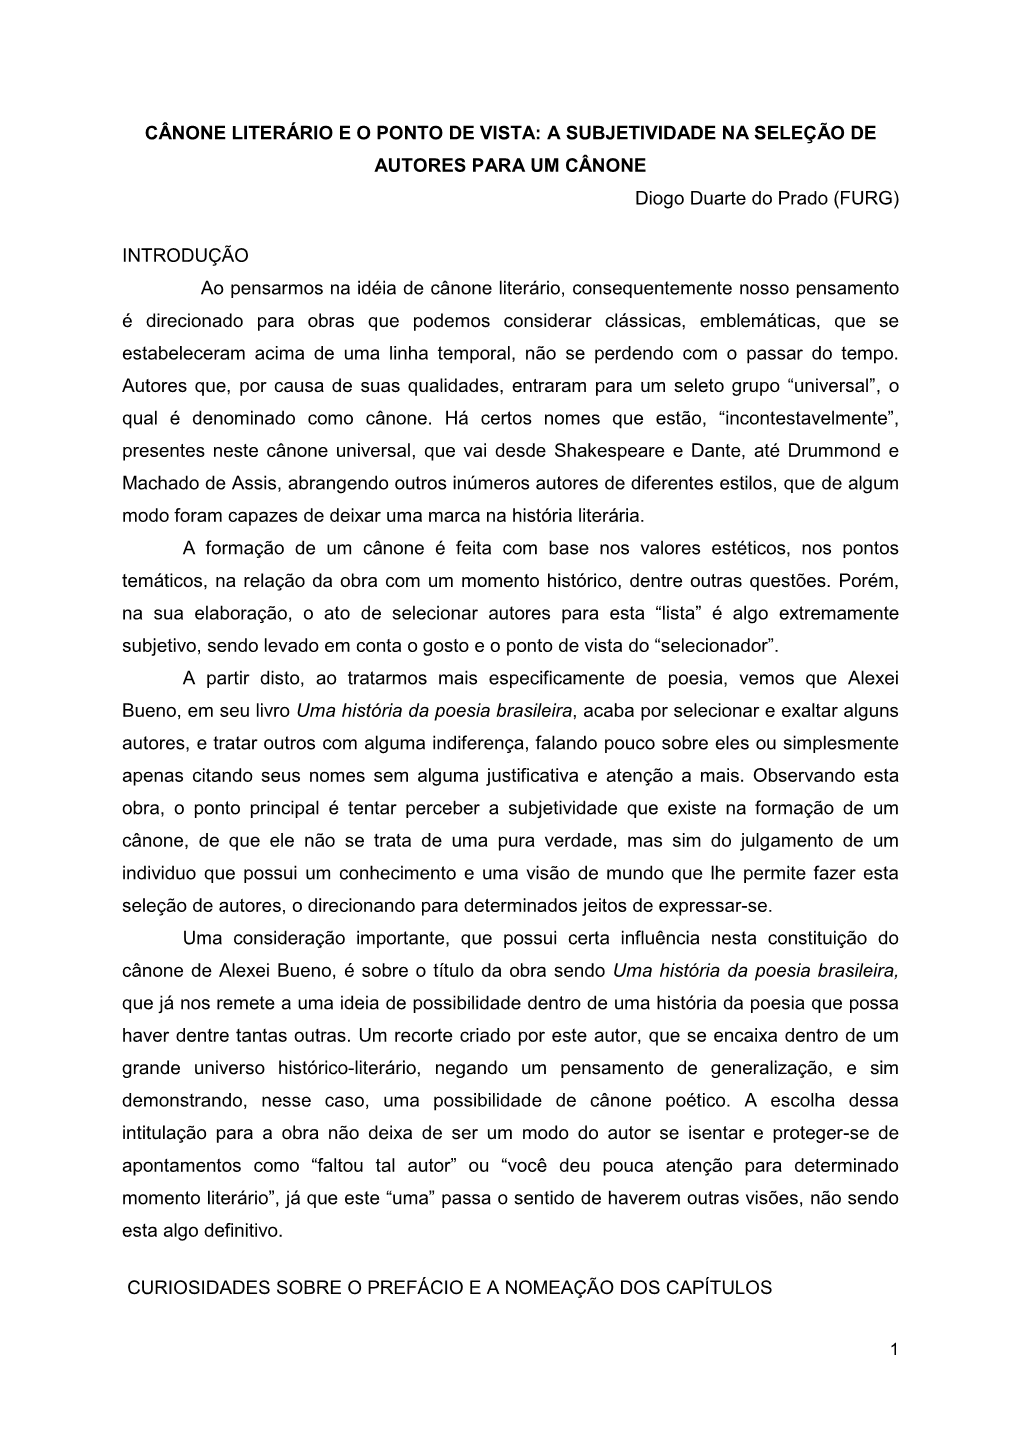 CÂNONE LITERÁRIO E O PONTO DE VISTA: a SUBJETIVIDADE NA SELEÇÃO DE AUTORES PARA UM CÂNONE Diogo Duarte Do Prado (FURG)